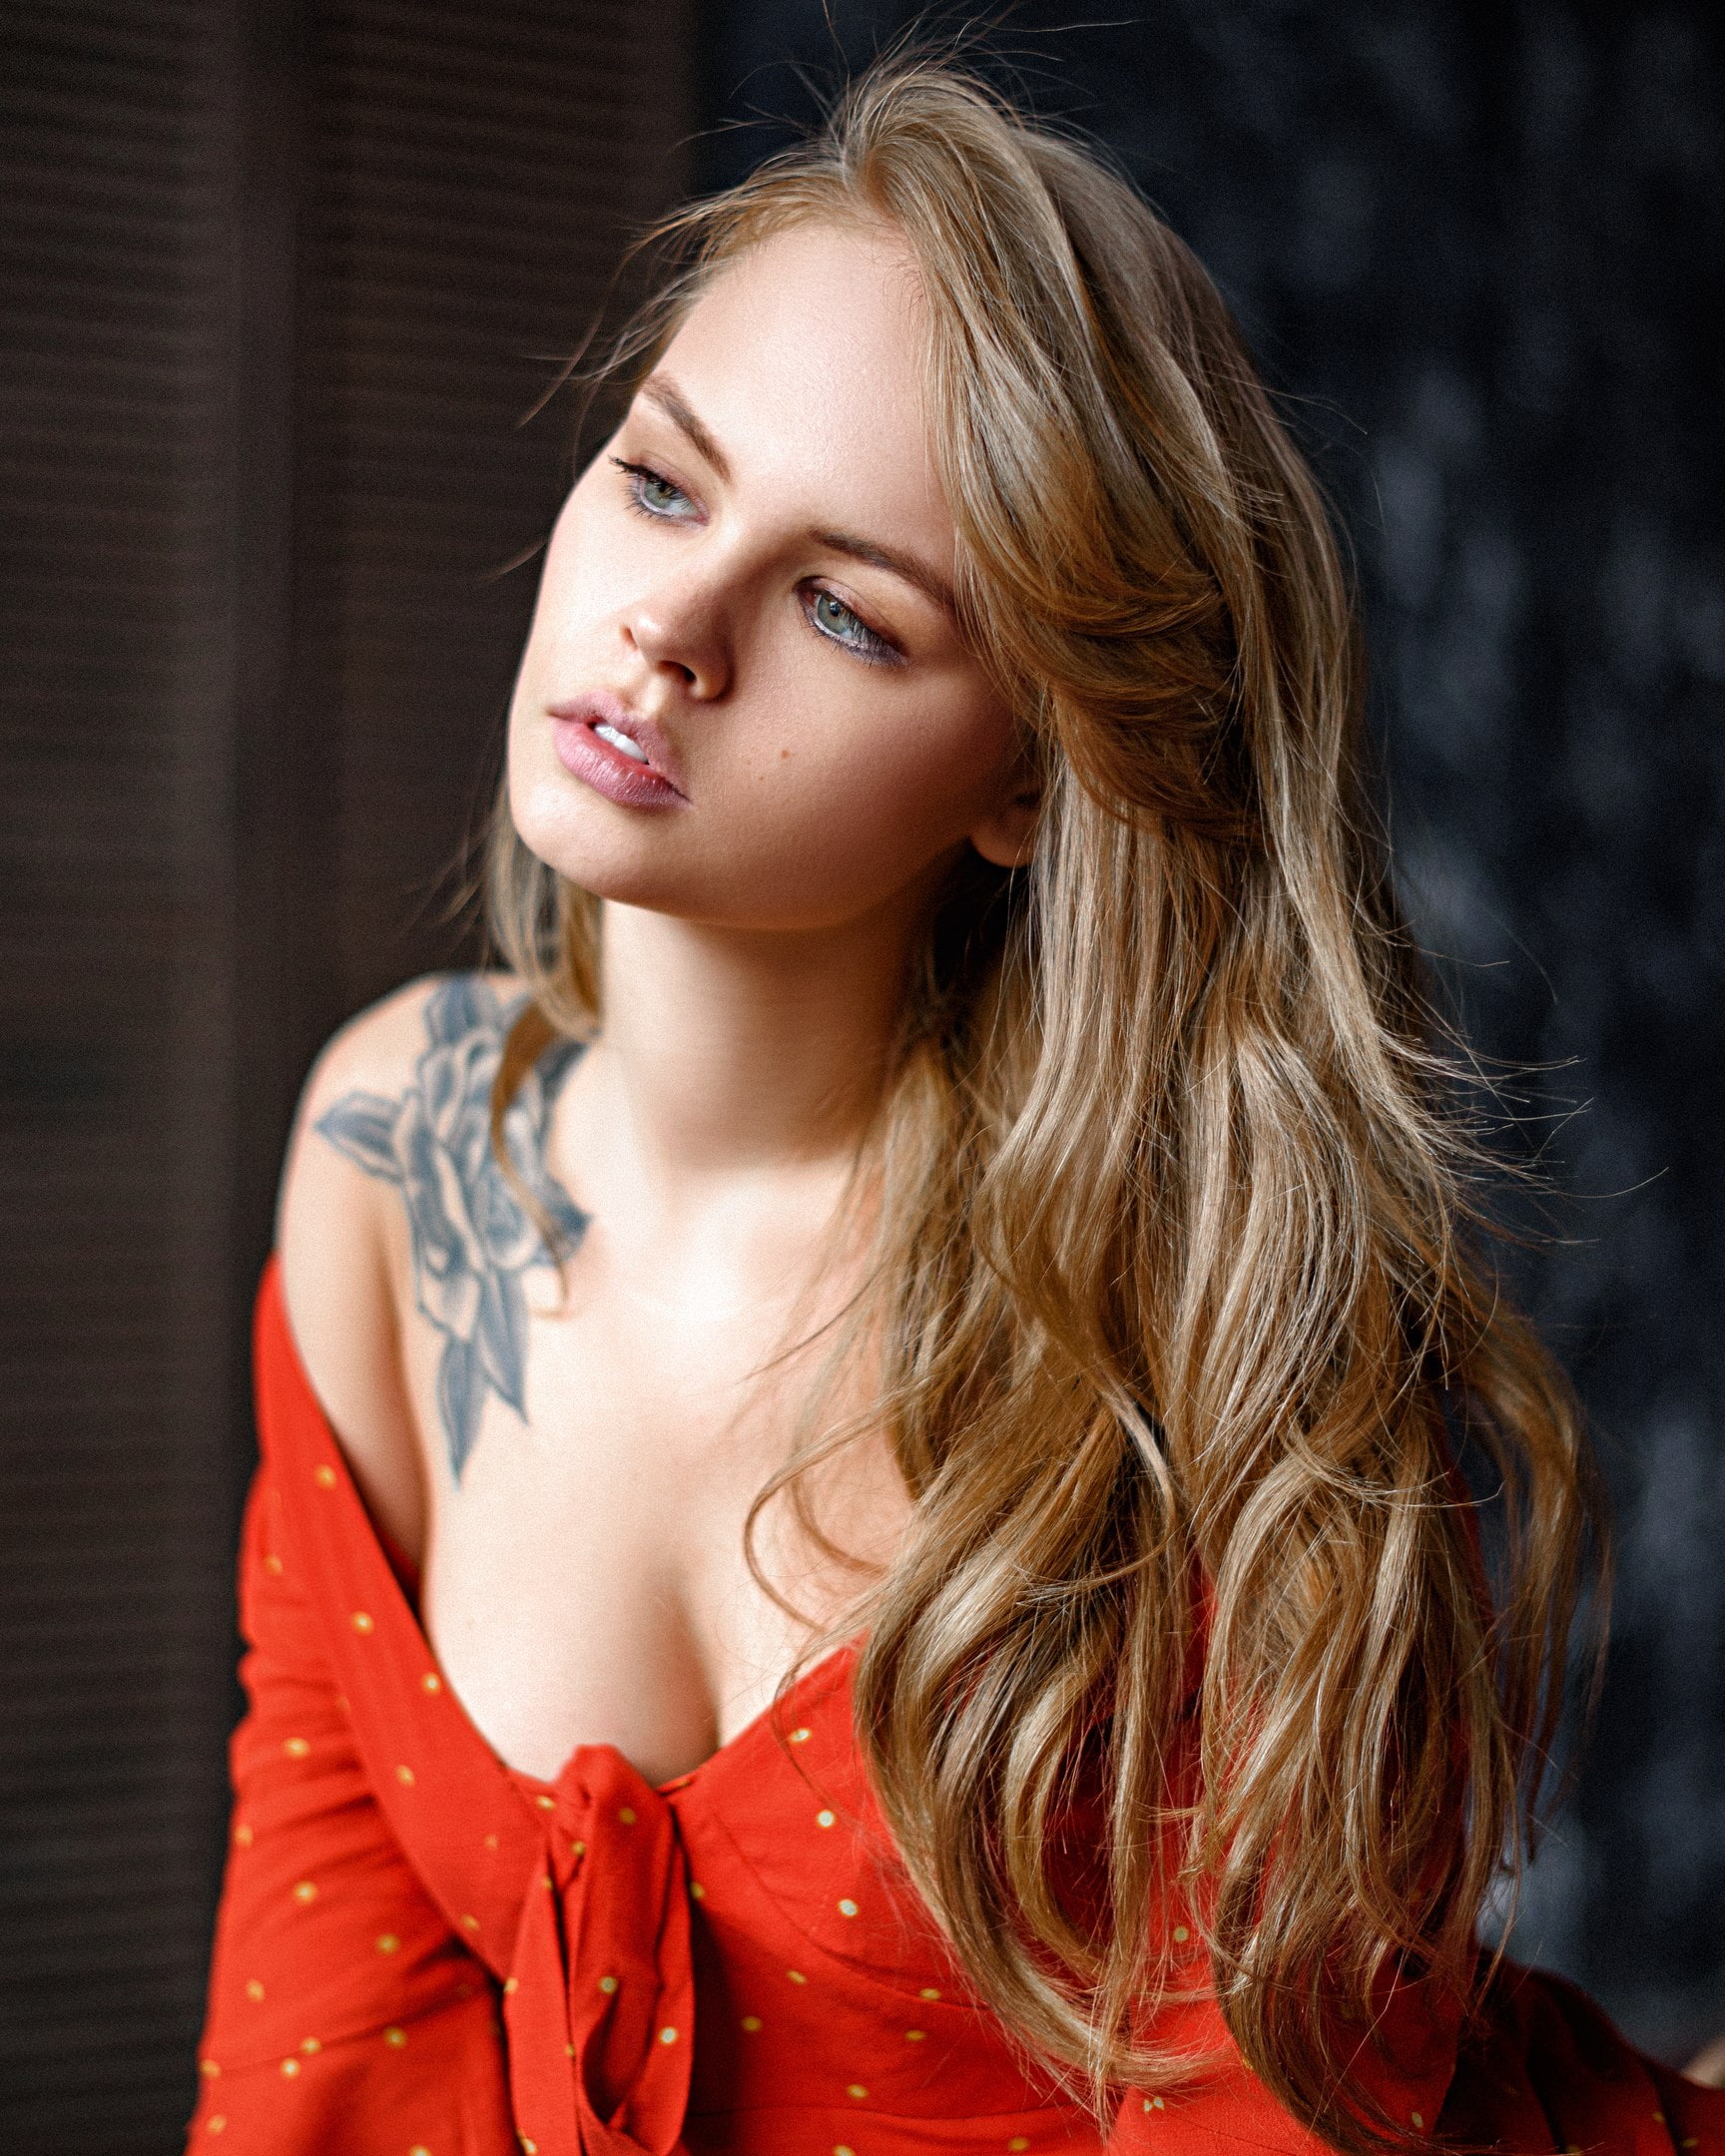 Anastasia Scheglova, Max Pyzhik, women, model, blonde, portrait